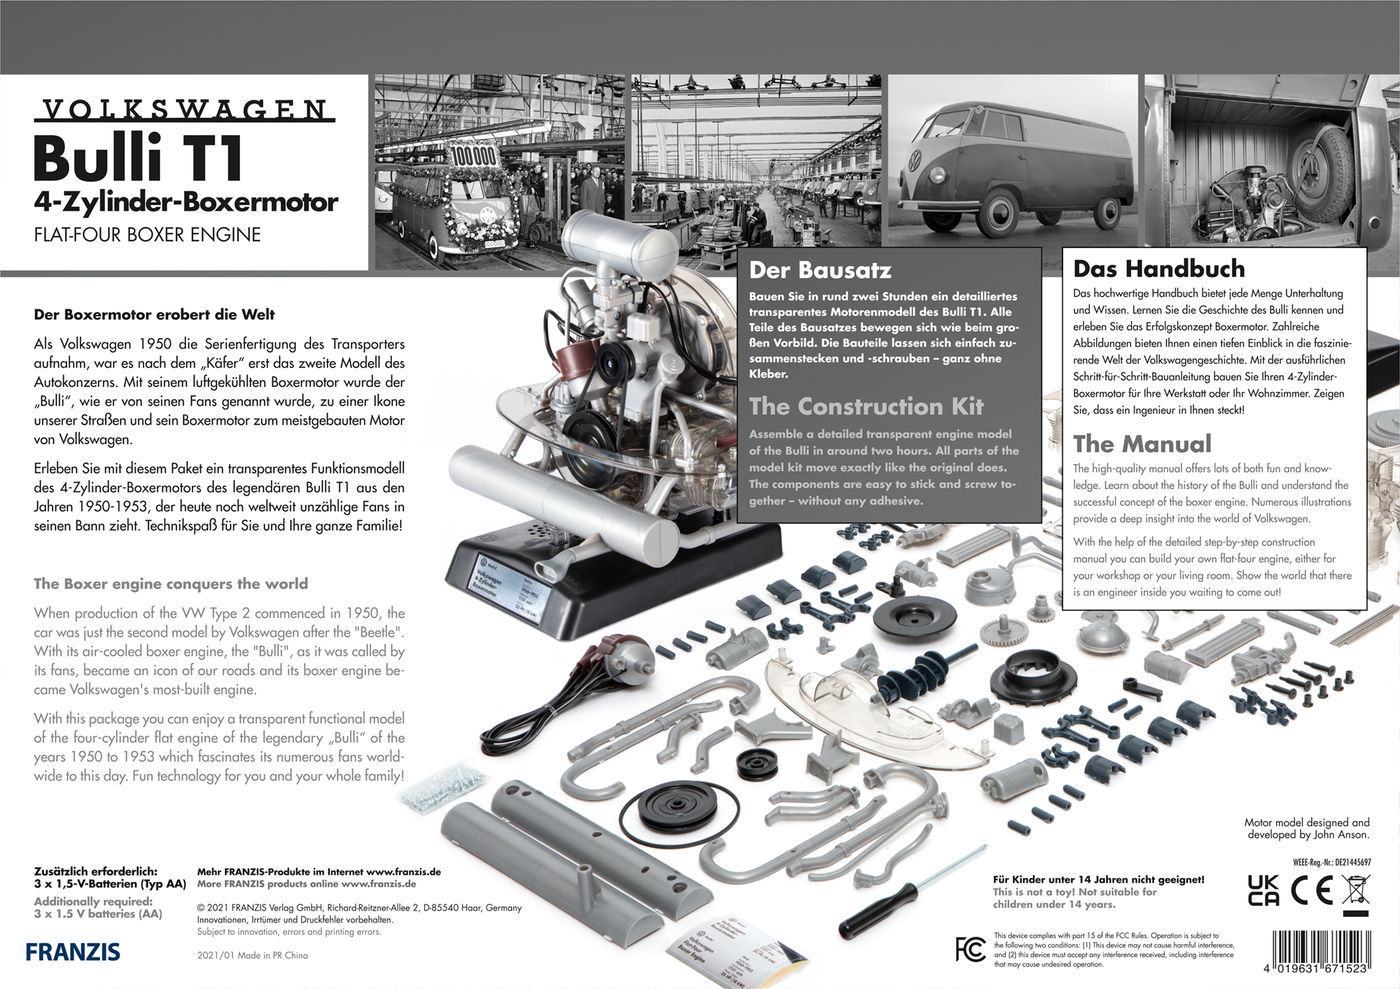 Modellbausatz
Model kit
Kit de construction maquette
Kit de cons